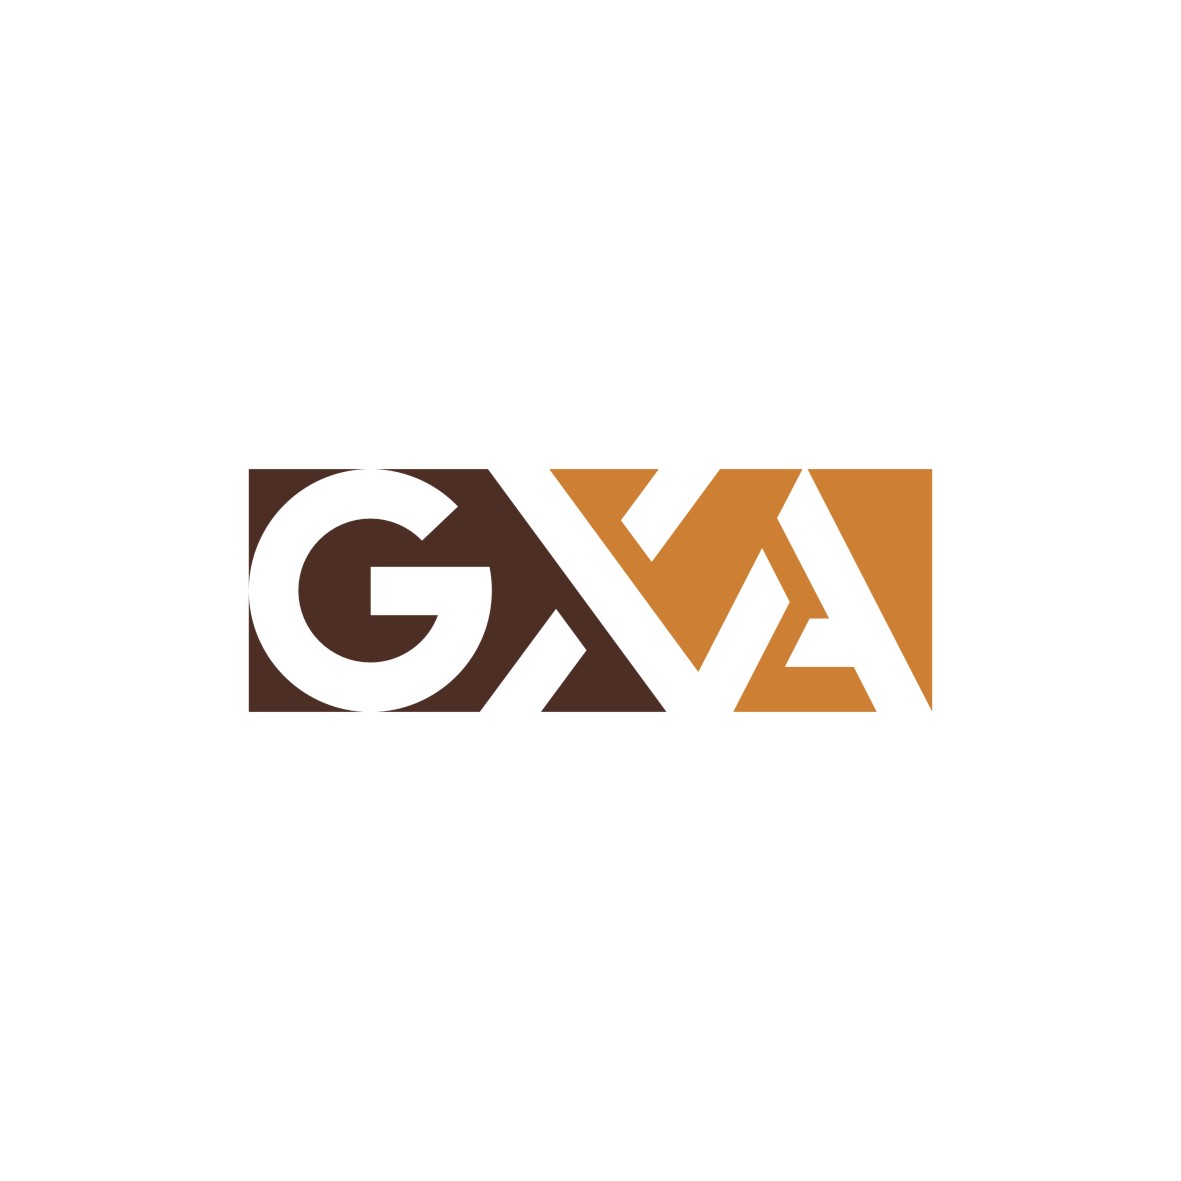 广州市君衍电子商务商行商标GXA（20类）多少钱？